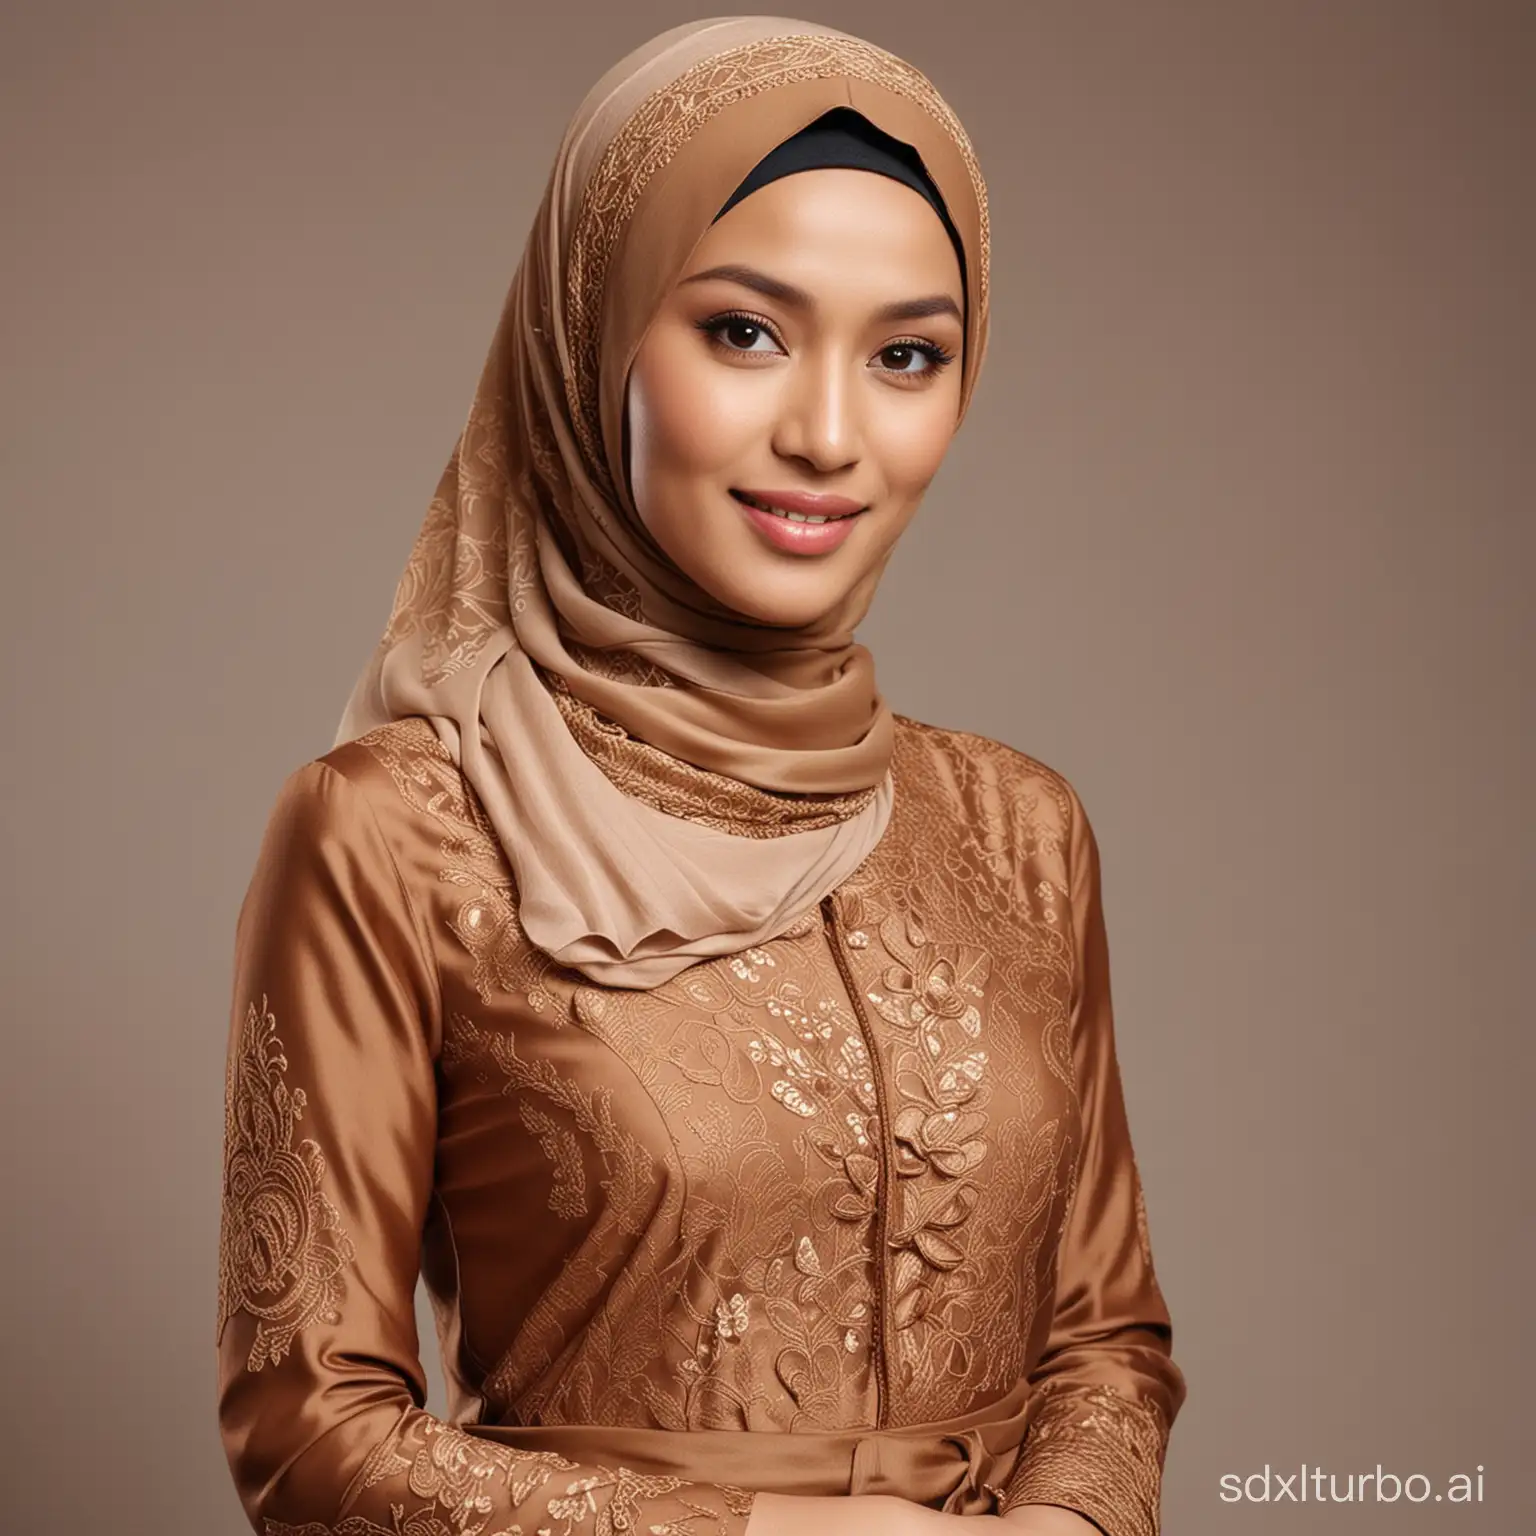 Ra-Kartini-Portrait-in-Milk-ChocolateColored-Kebaya-and-Hijab